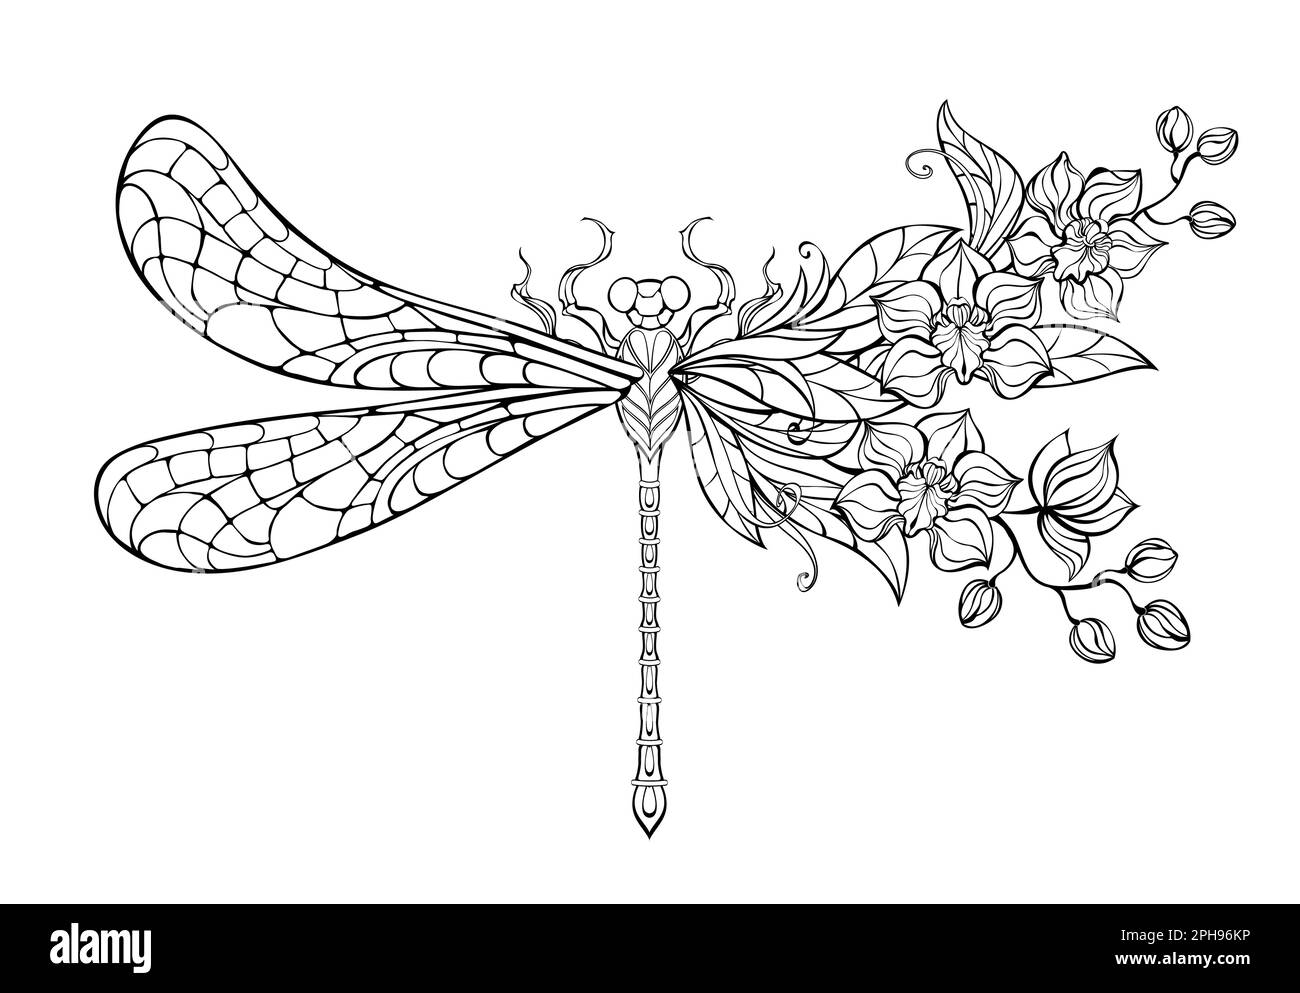 Contorno, stilizzata, dragonfly artistica, decorata con orchidee esotiche su sfondo bianco. Libellula da colorare. Illustrazione Vettoriale